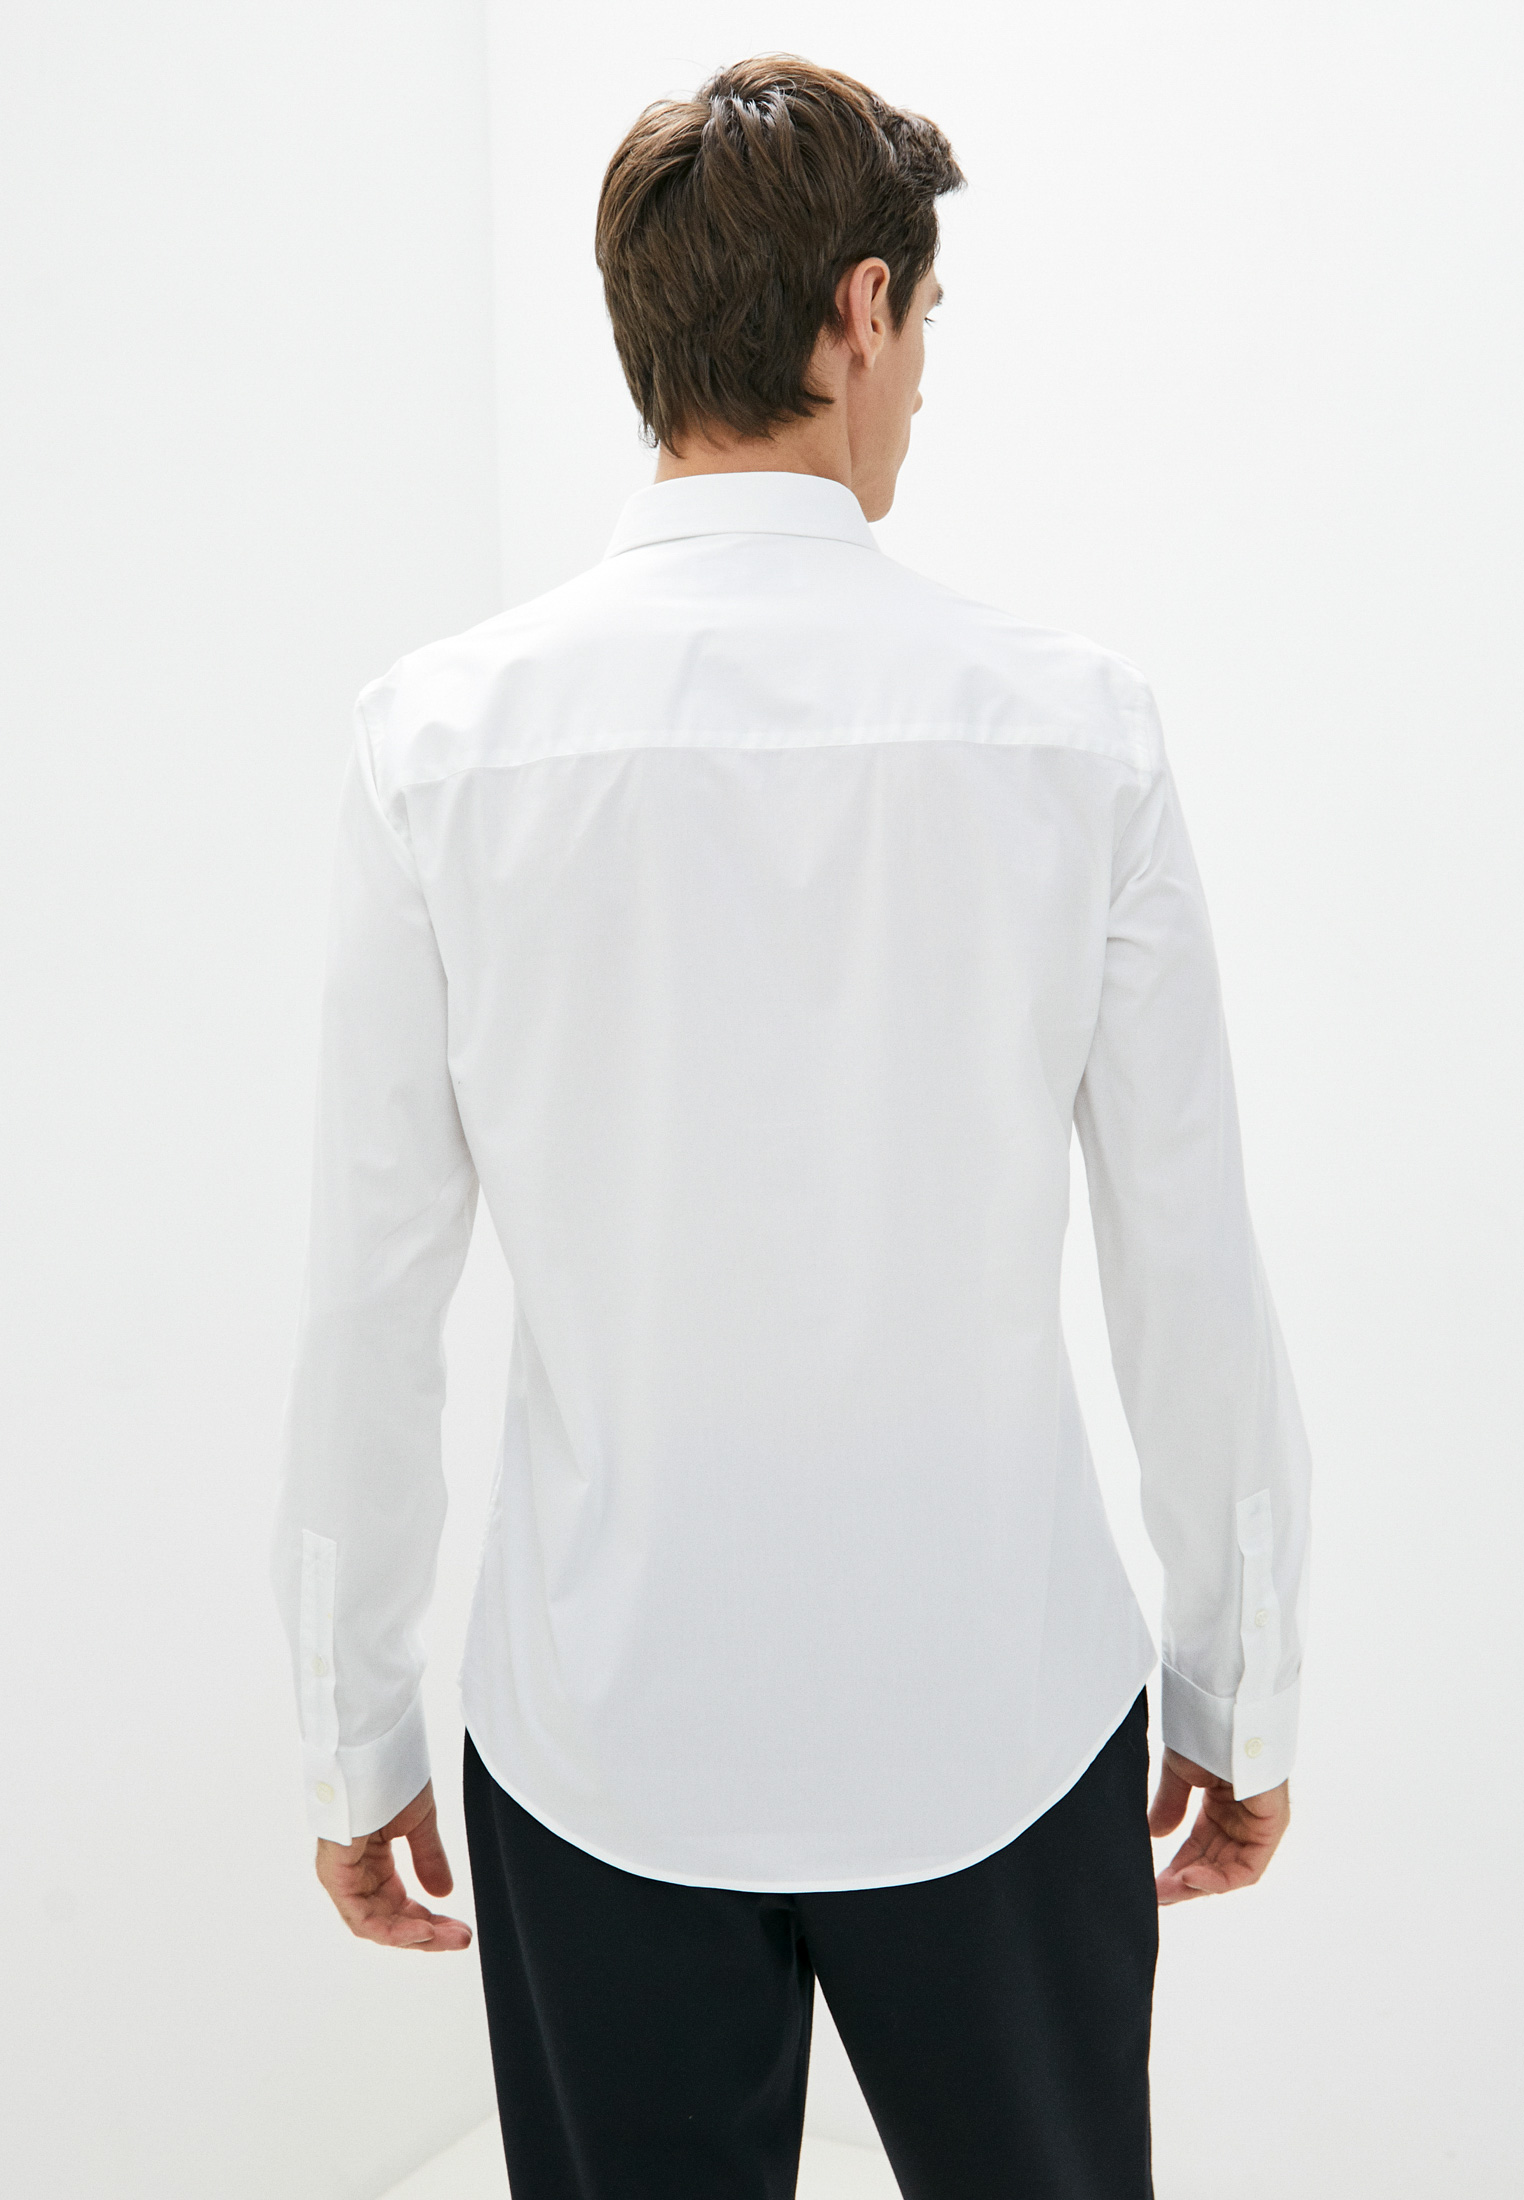 Рубашка с длинным рукавом Bikkembergs (Биккембергс) C C 072 00 S 2931: изображение 4